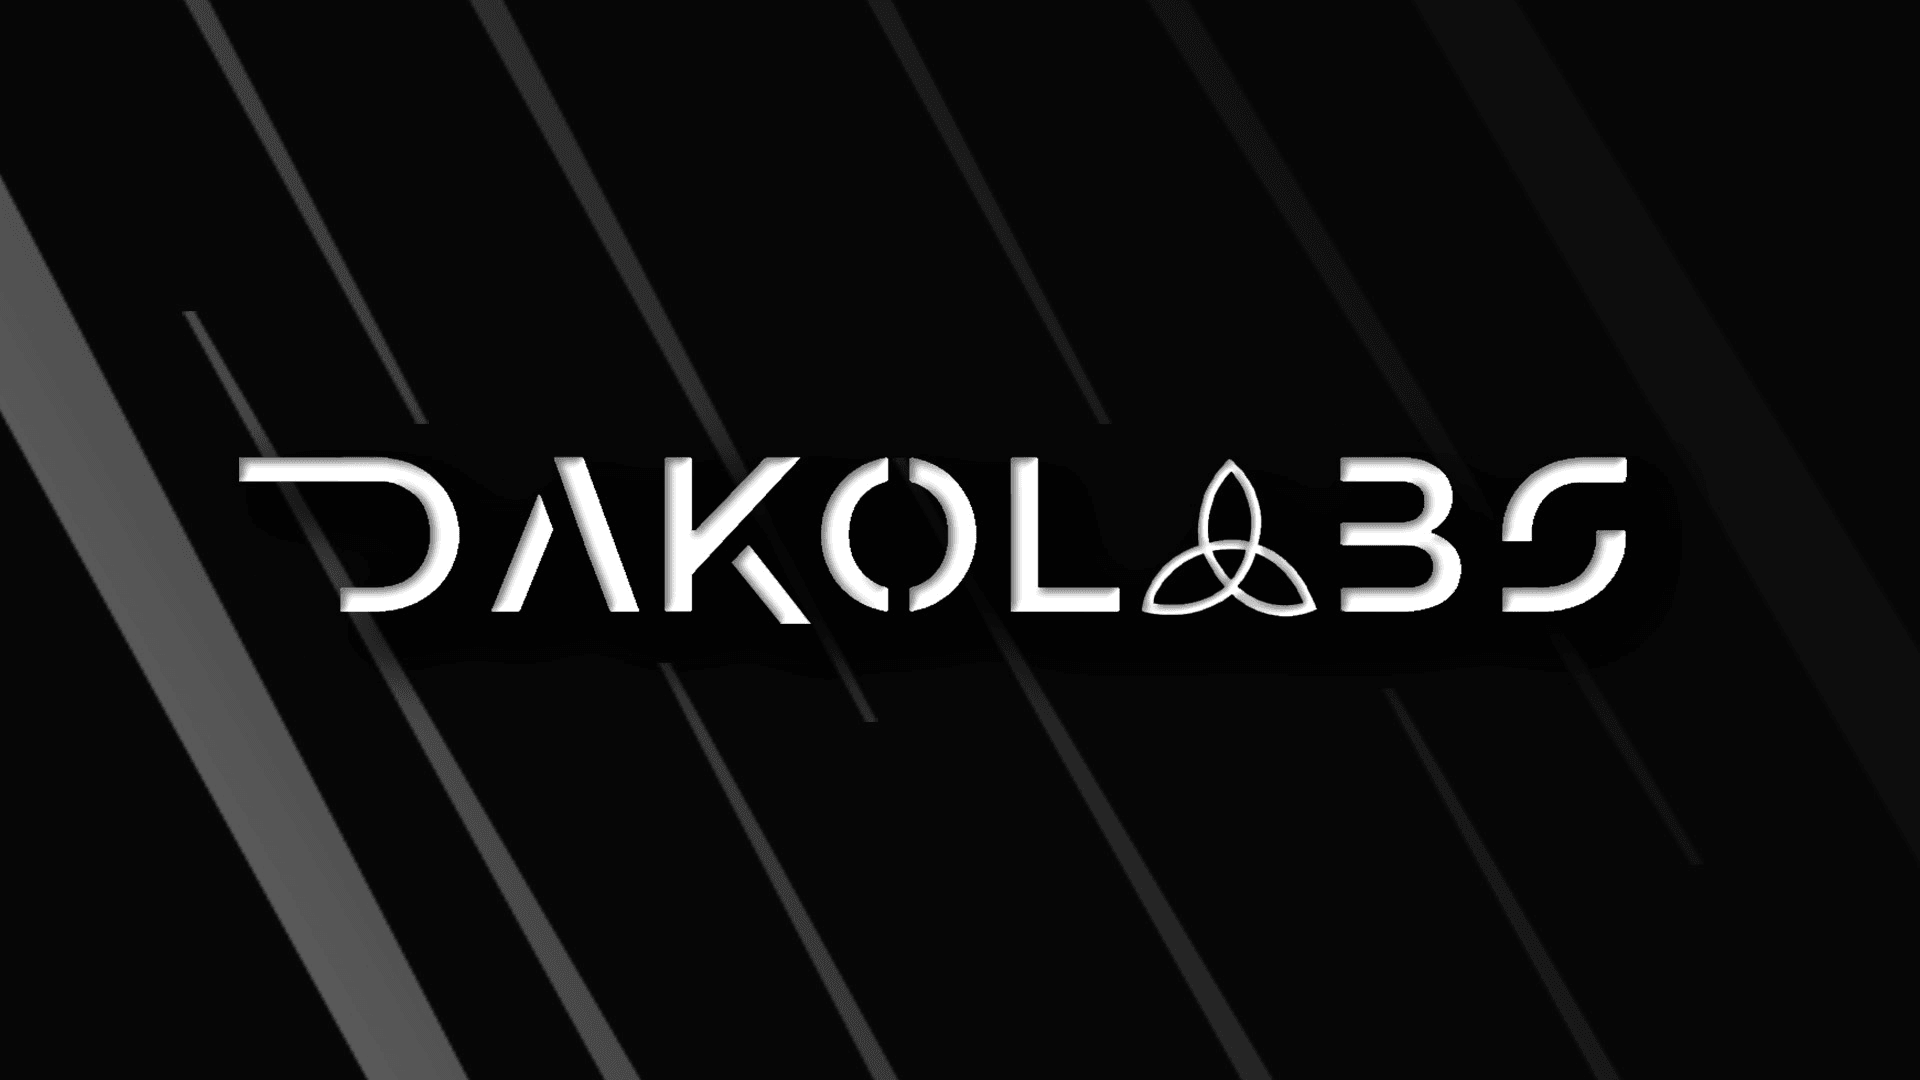 DakoLabs_Official banner